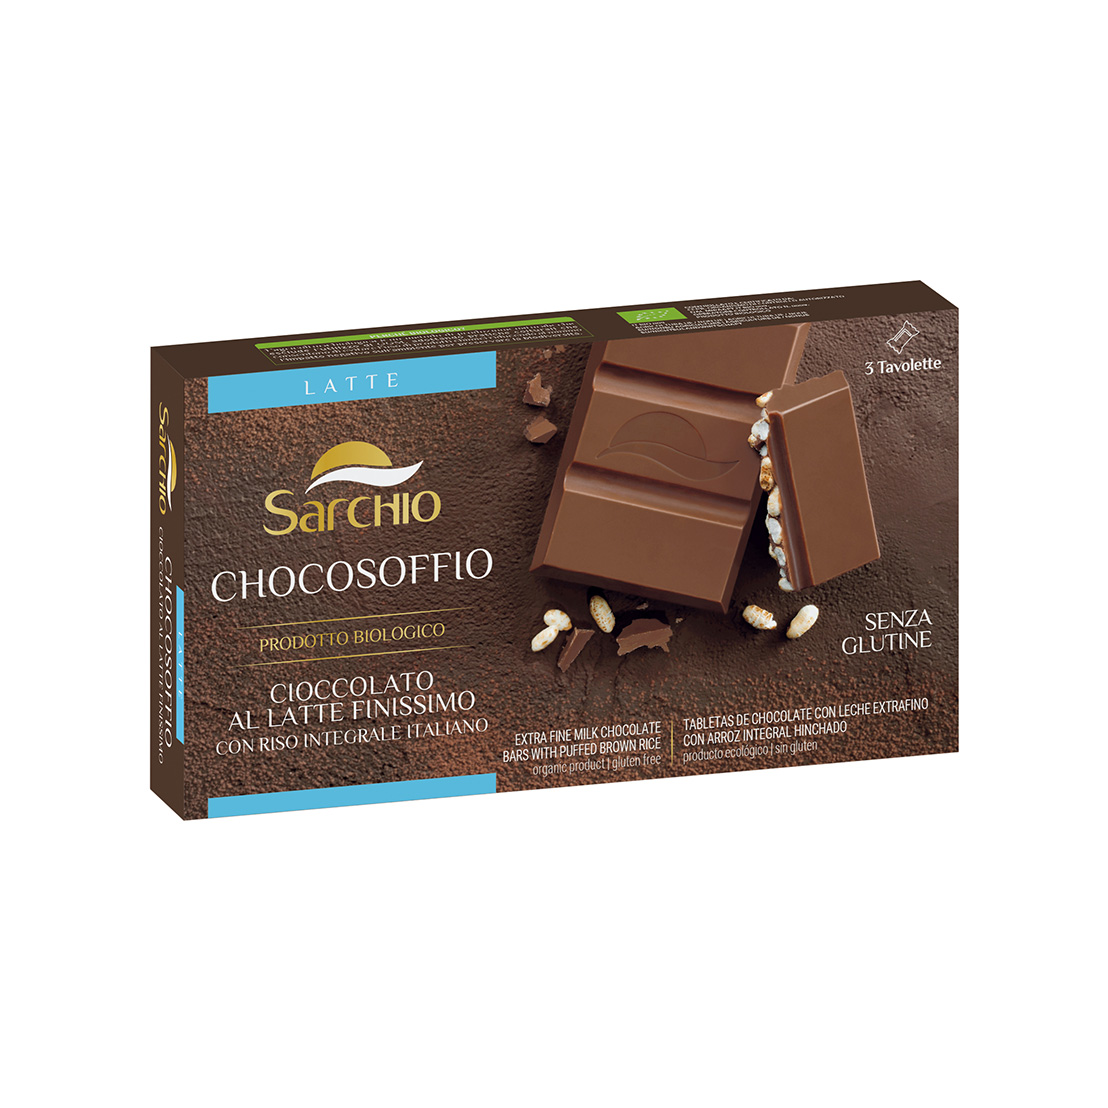 Chocosoffio milk chocolate